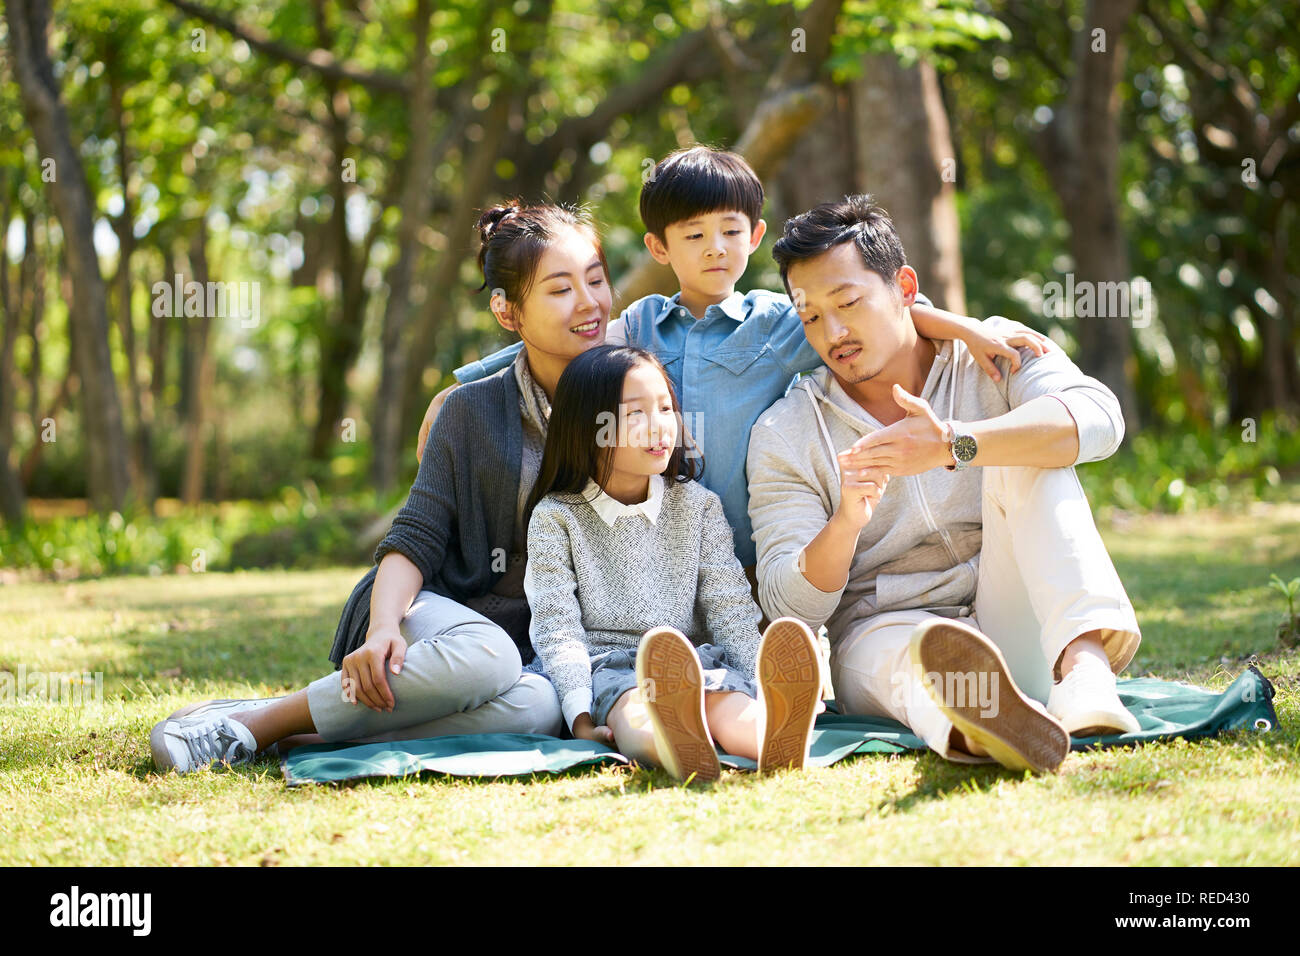 Familia de Asia con dos hijos se divierten sentados en la hierba hablando charlando afuera en el parque Foto de stock